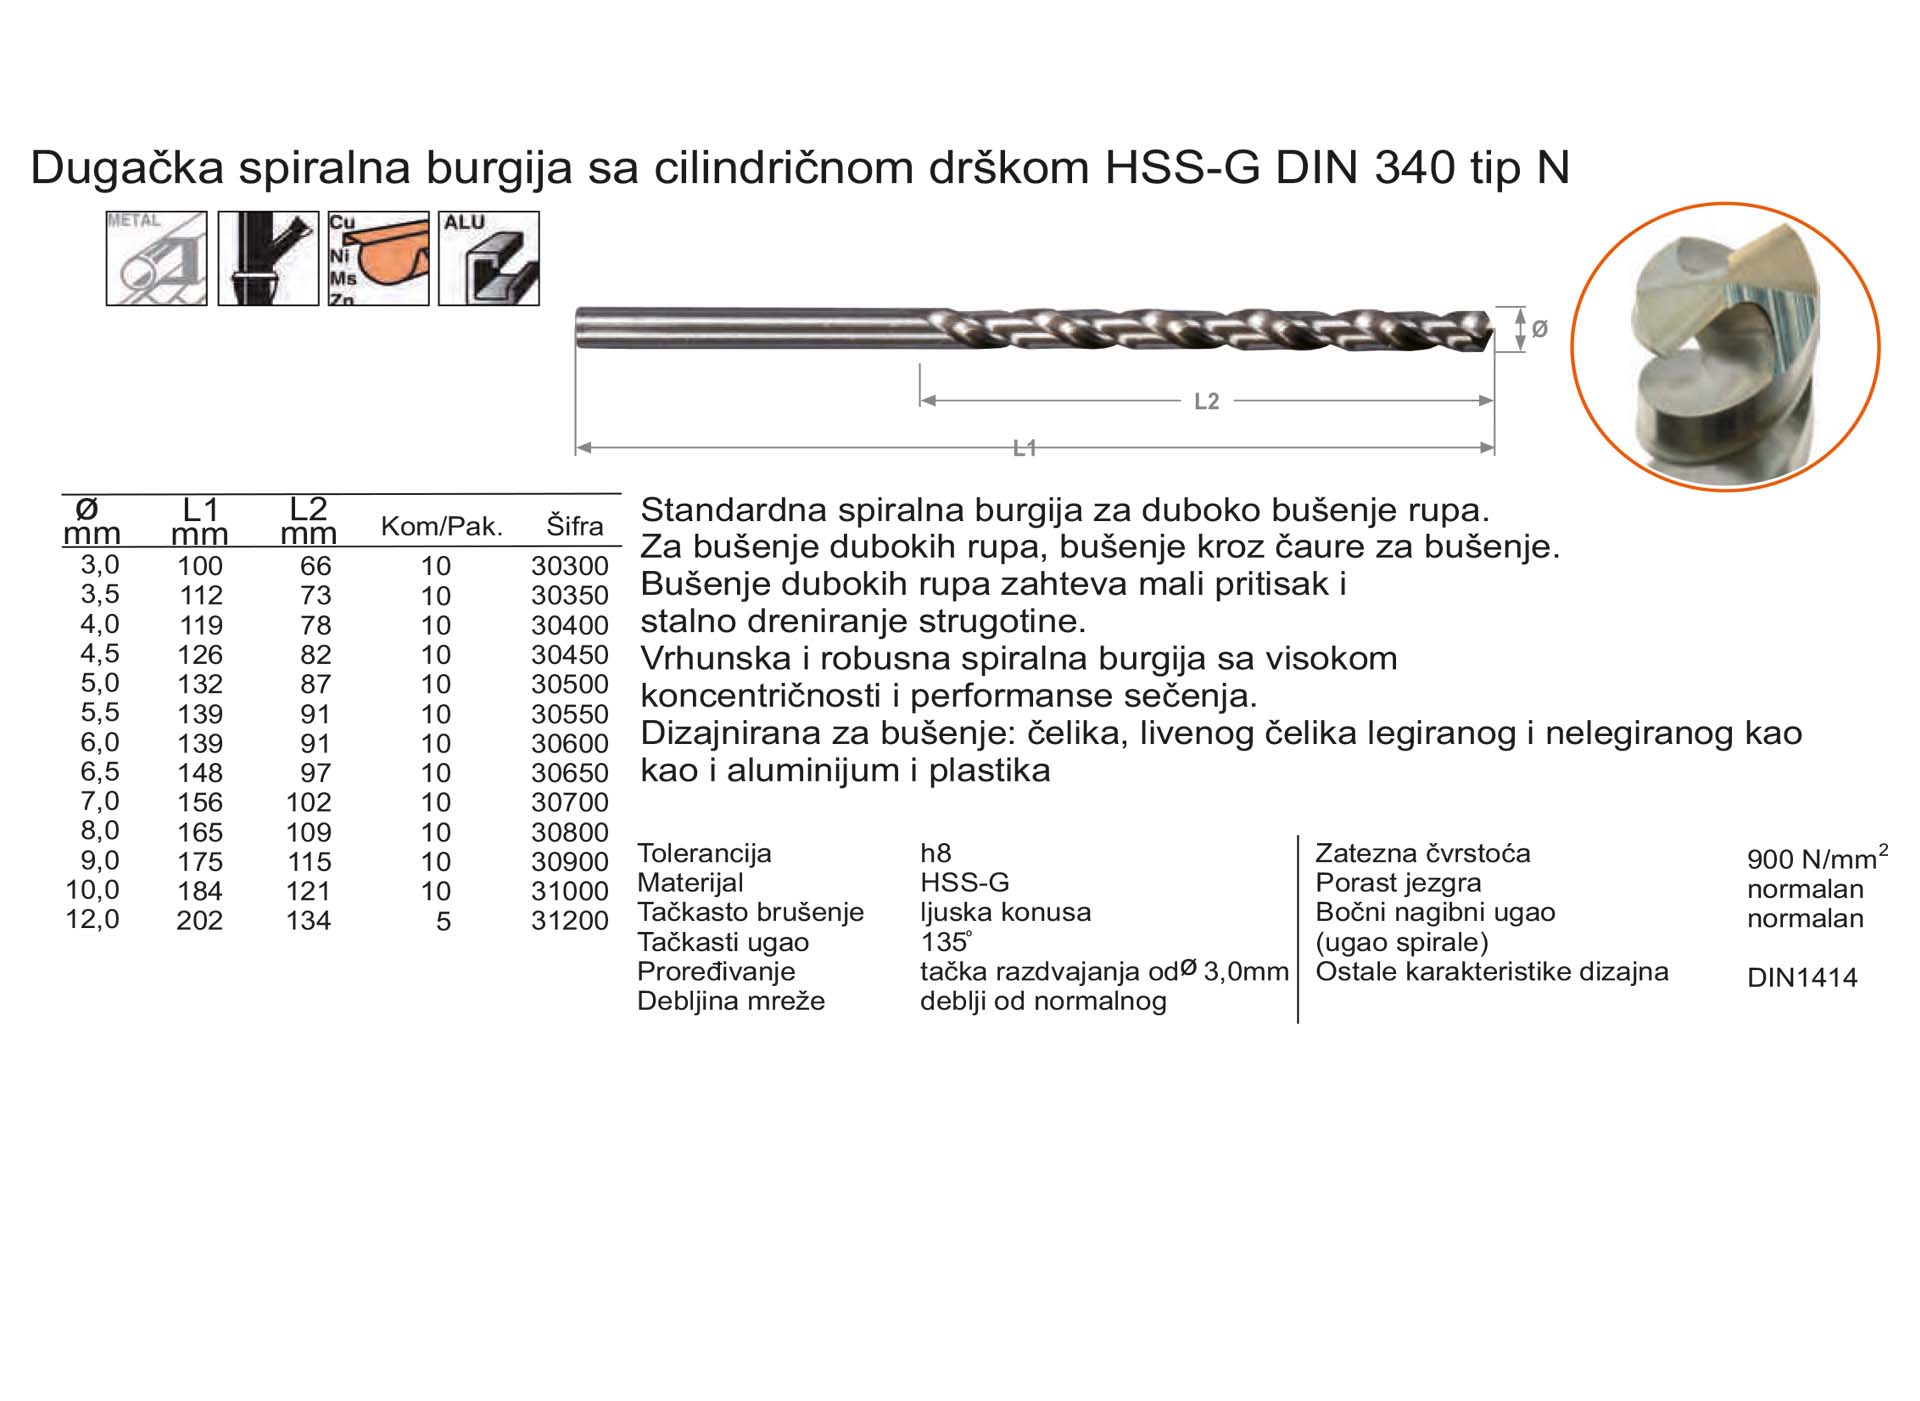 Dugačka spiralna burgija sa cilindričnom drškom HSS-G DIN 340 tip N